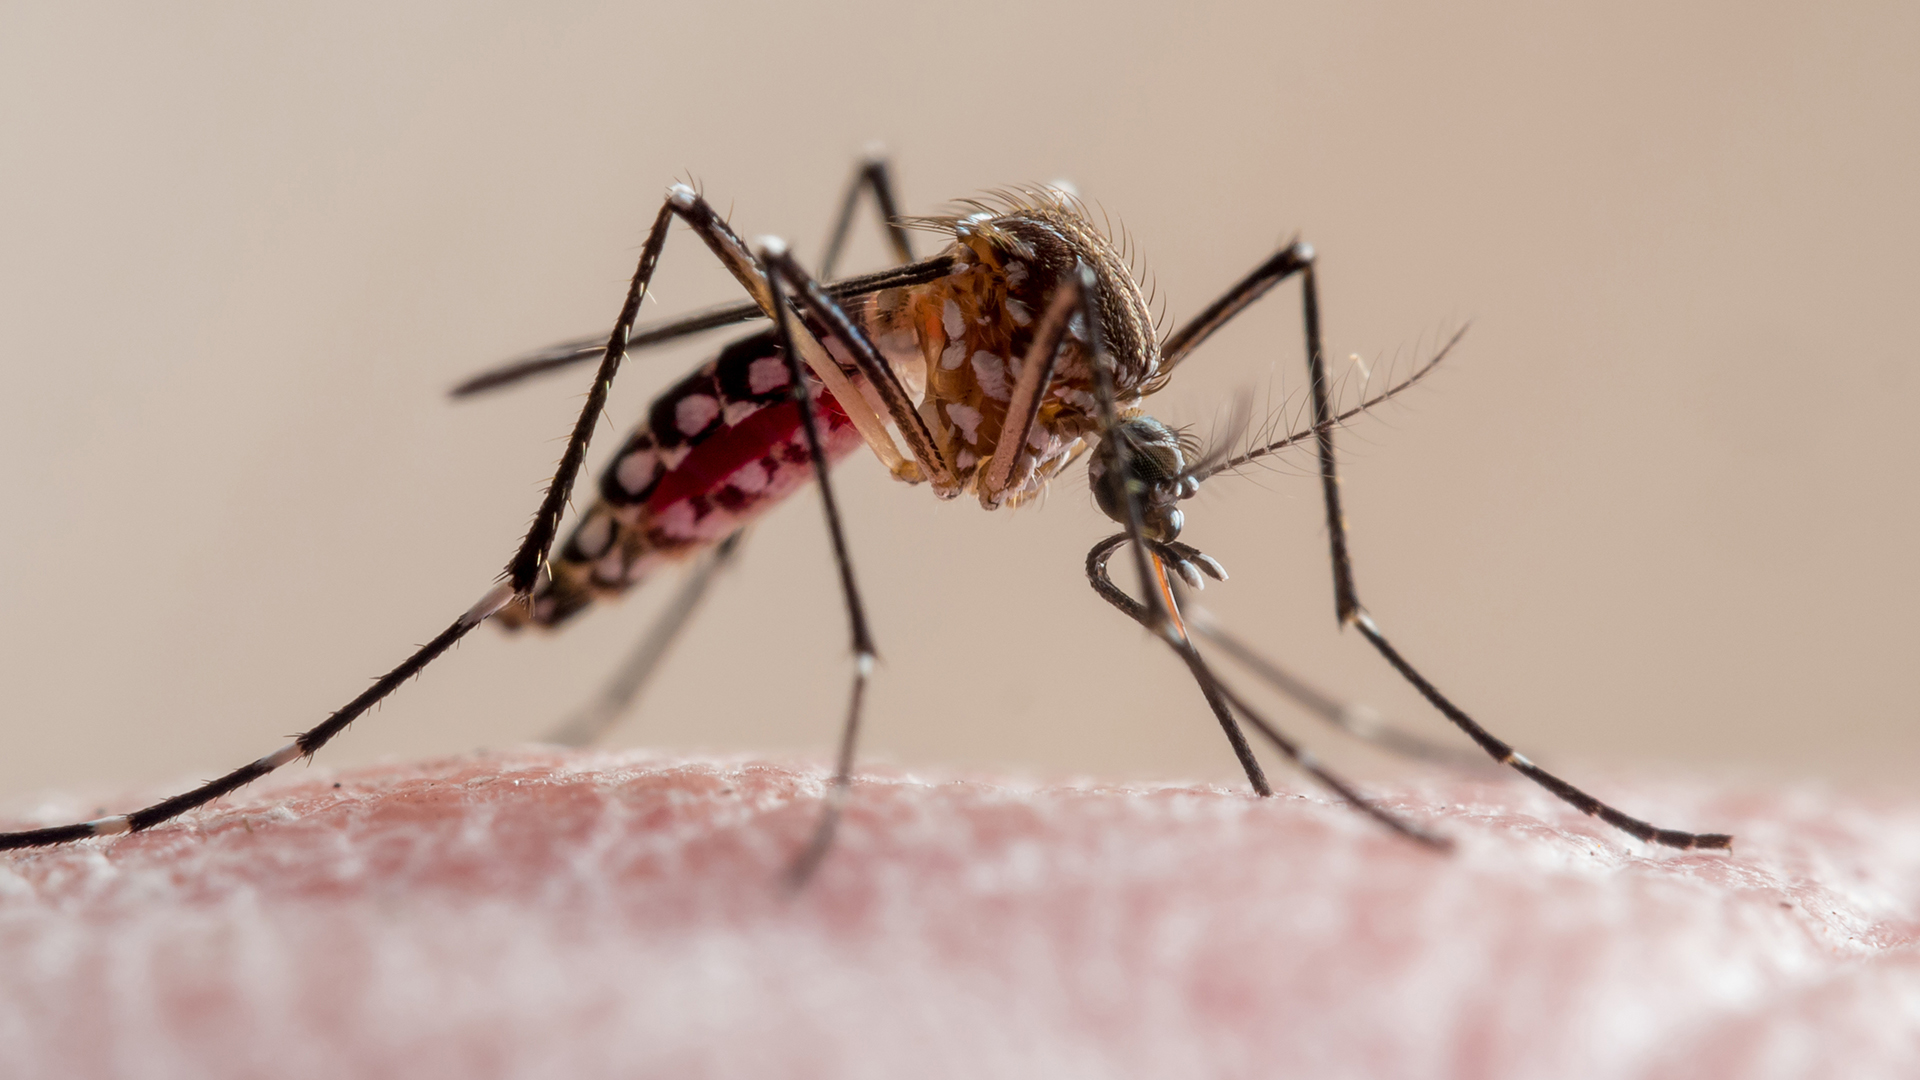 Epidemia de dengue en Argentina: récord de 100.675 casos y 57 muertes, pero las infecciones están en retroceso